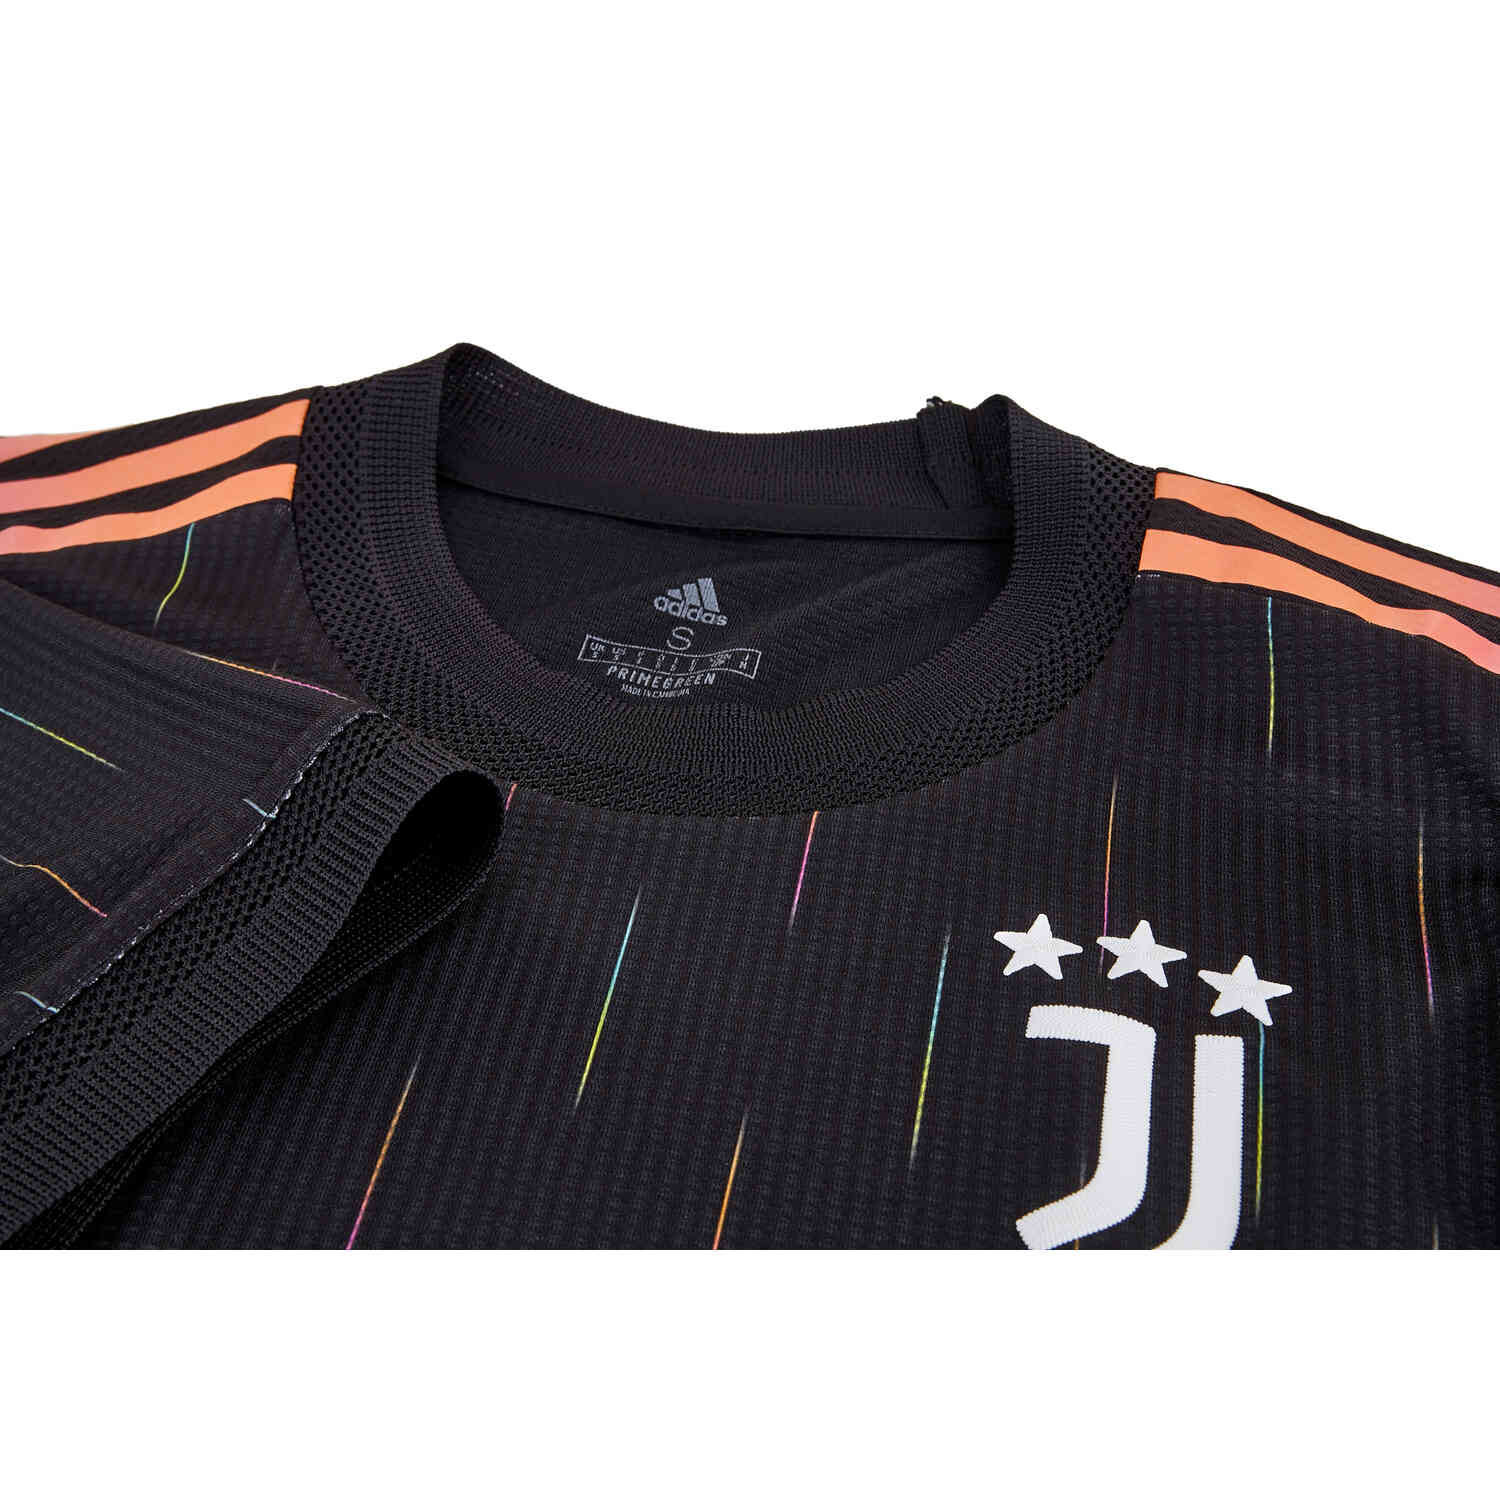 Adidas Juventus Away Jersey 21/22 Youth - Black - Size ym